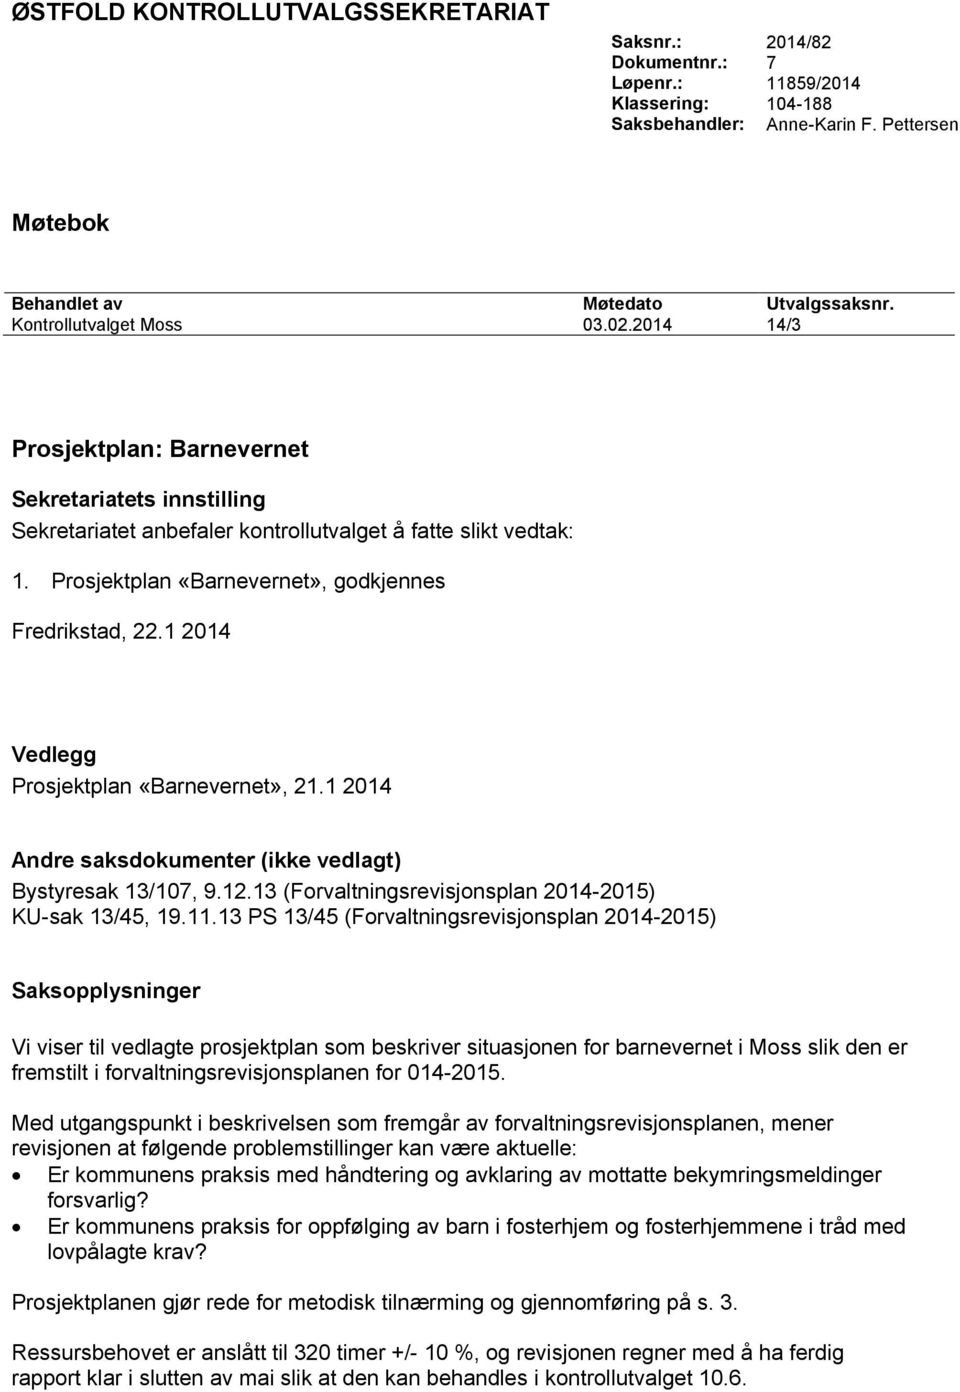 Prosjektplan «Barnevernet», godkjennes Fredrikstad, 22.1 2014 Vedlegg Prosjektplan «Barnevernet», 21.1 2014 Andre saksdokumenter (ikke vedlagt) Bystyresak 13/107, 9.12.